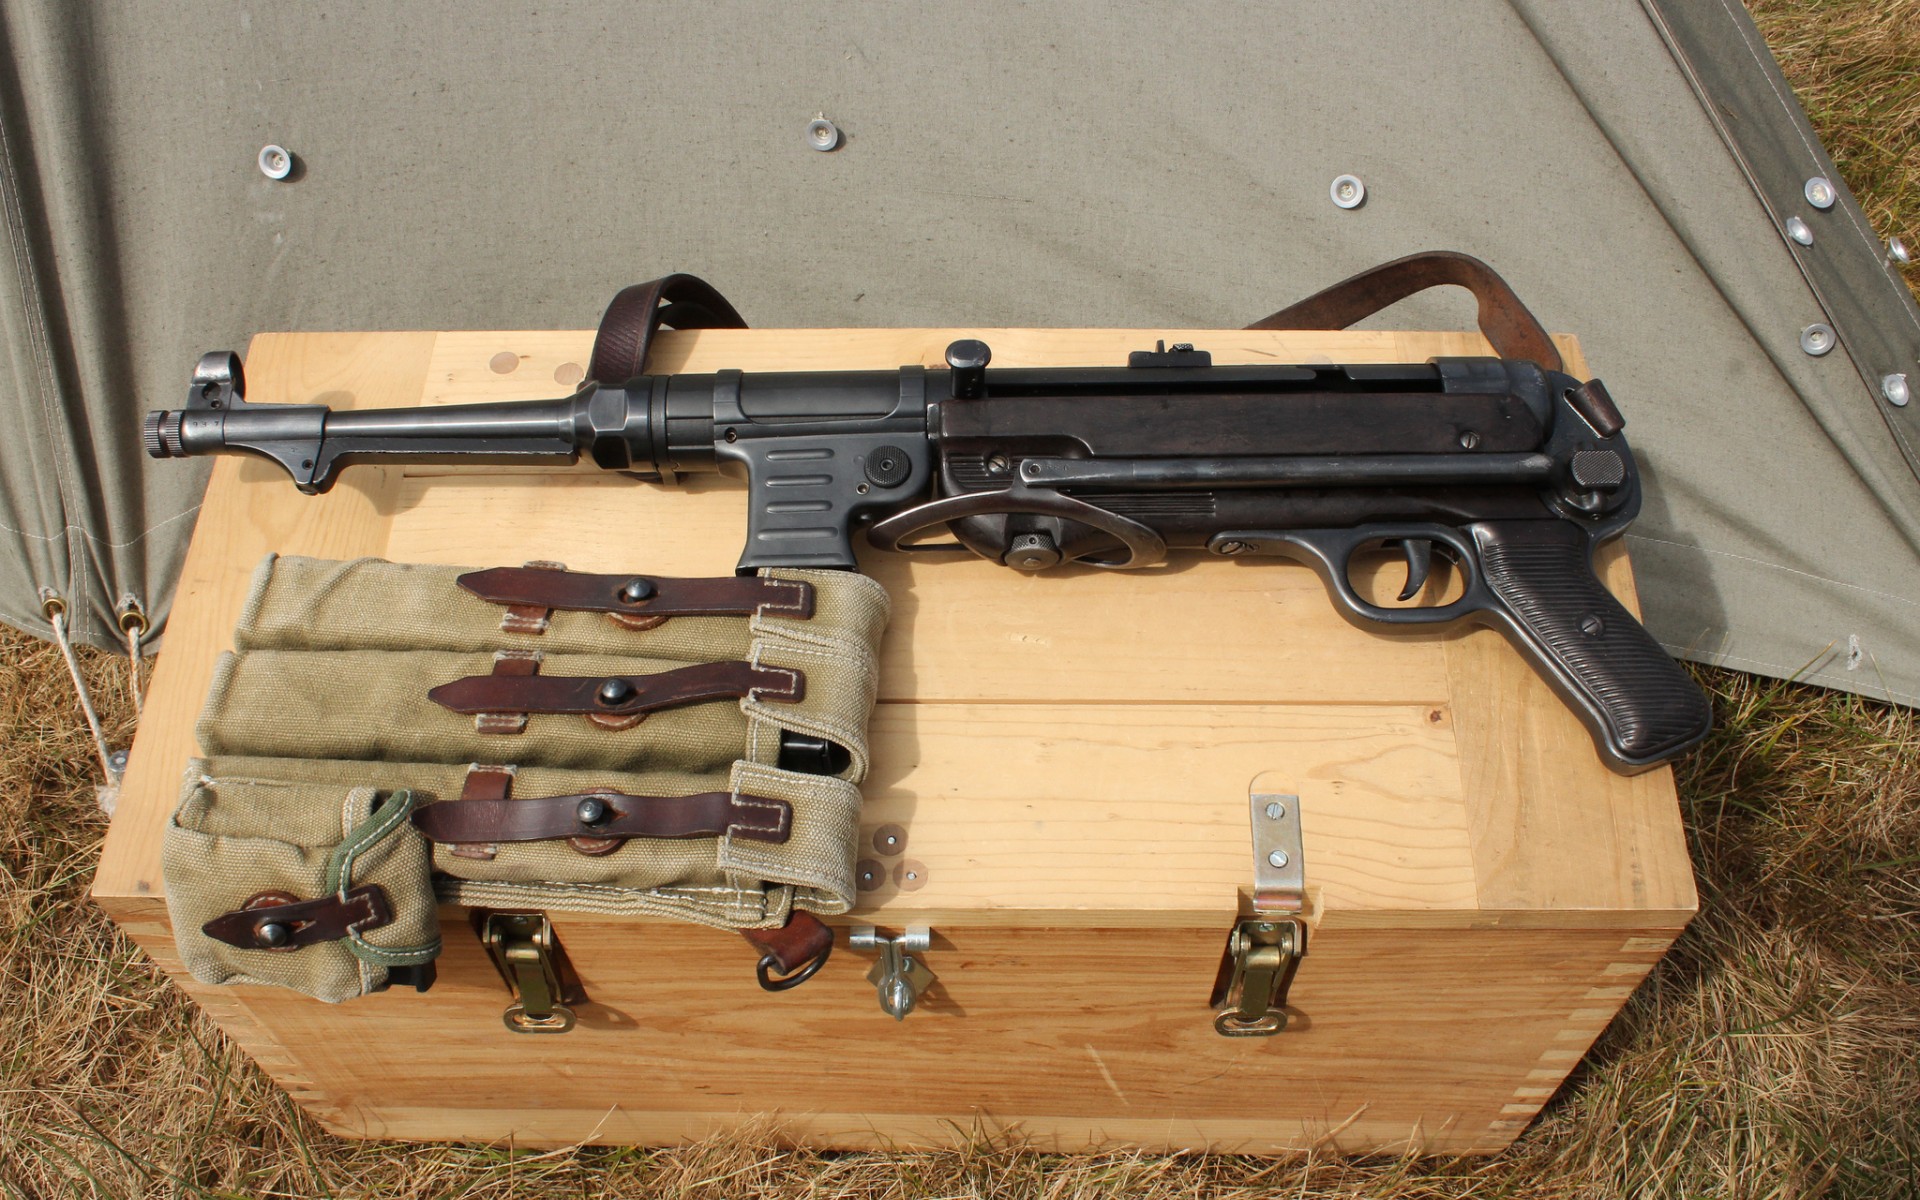 General 1920x1200 MP 40 weapon submachine gun Wehrmacht machine gun German firearms